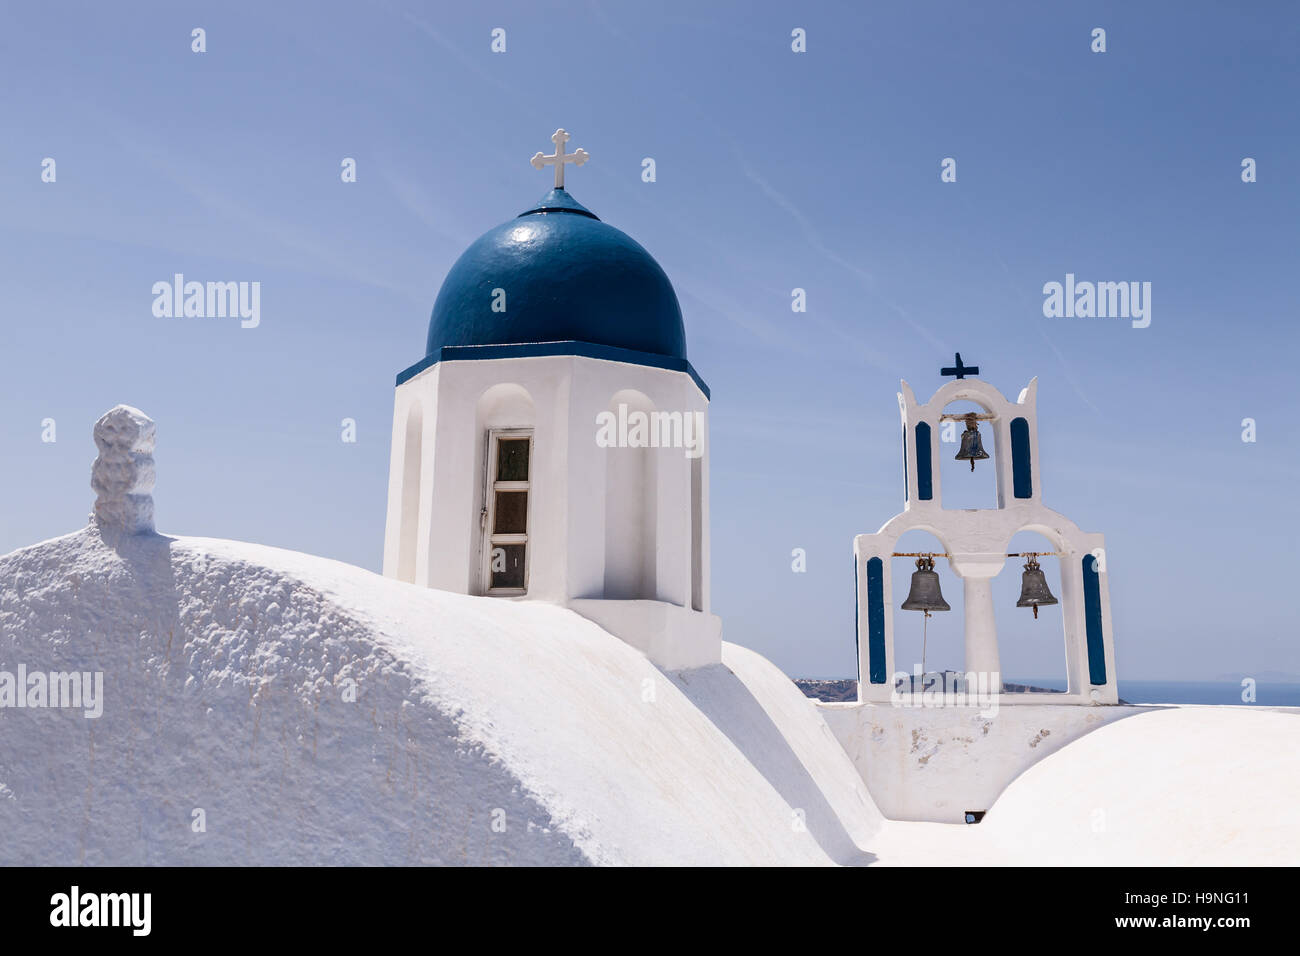 Église avec dôme bleu sur la tour Bell Rock Sakros Imerovigli, Santorini, Grèce Banque D'Images